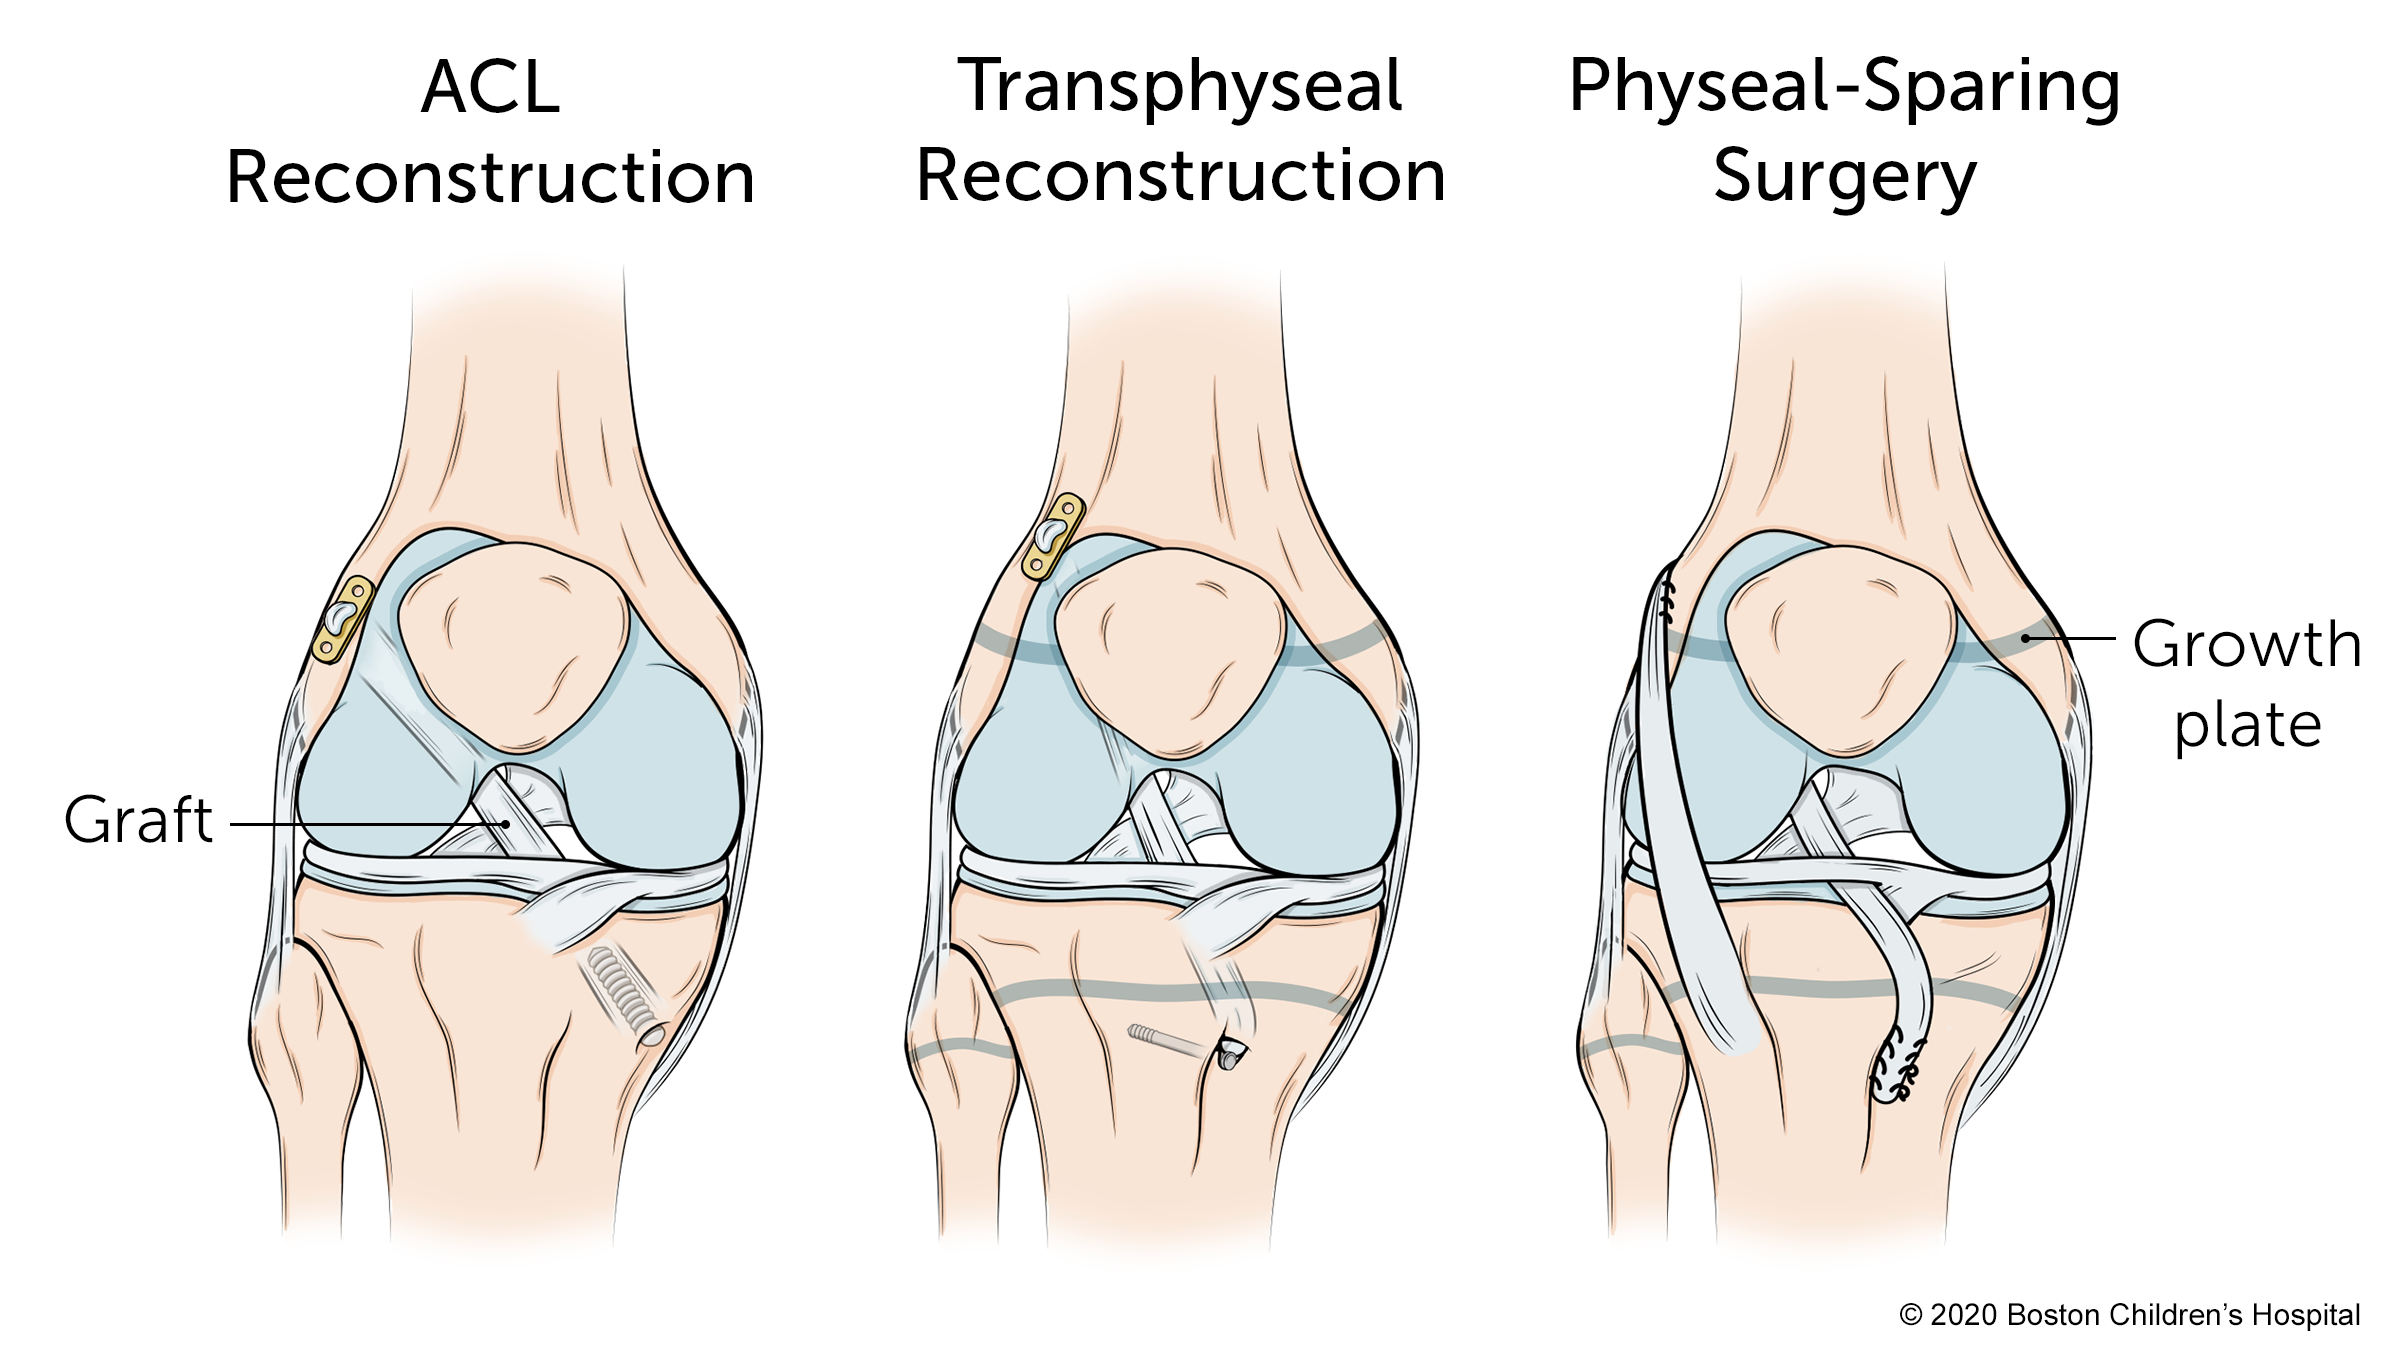 有三种类型的手术:ACL重建，transphyseal重建和物理保留手术。